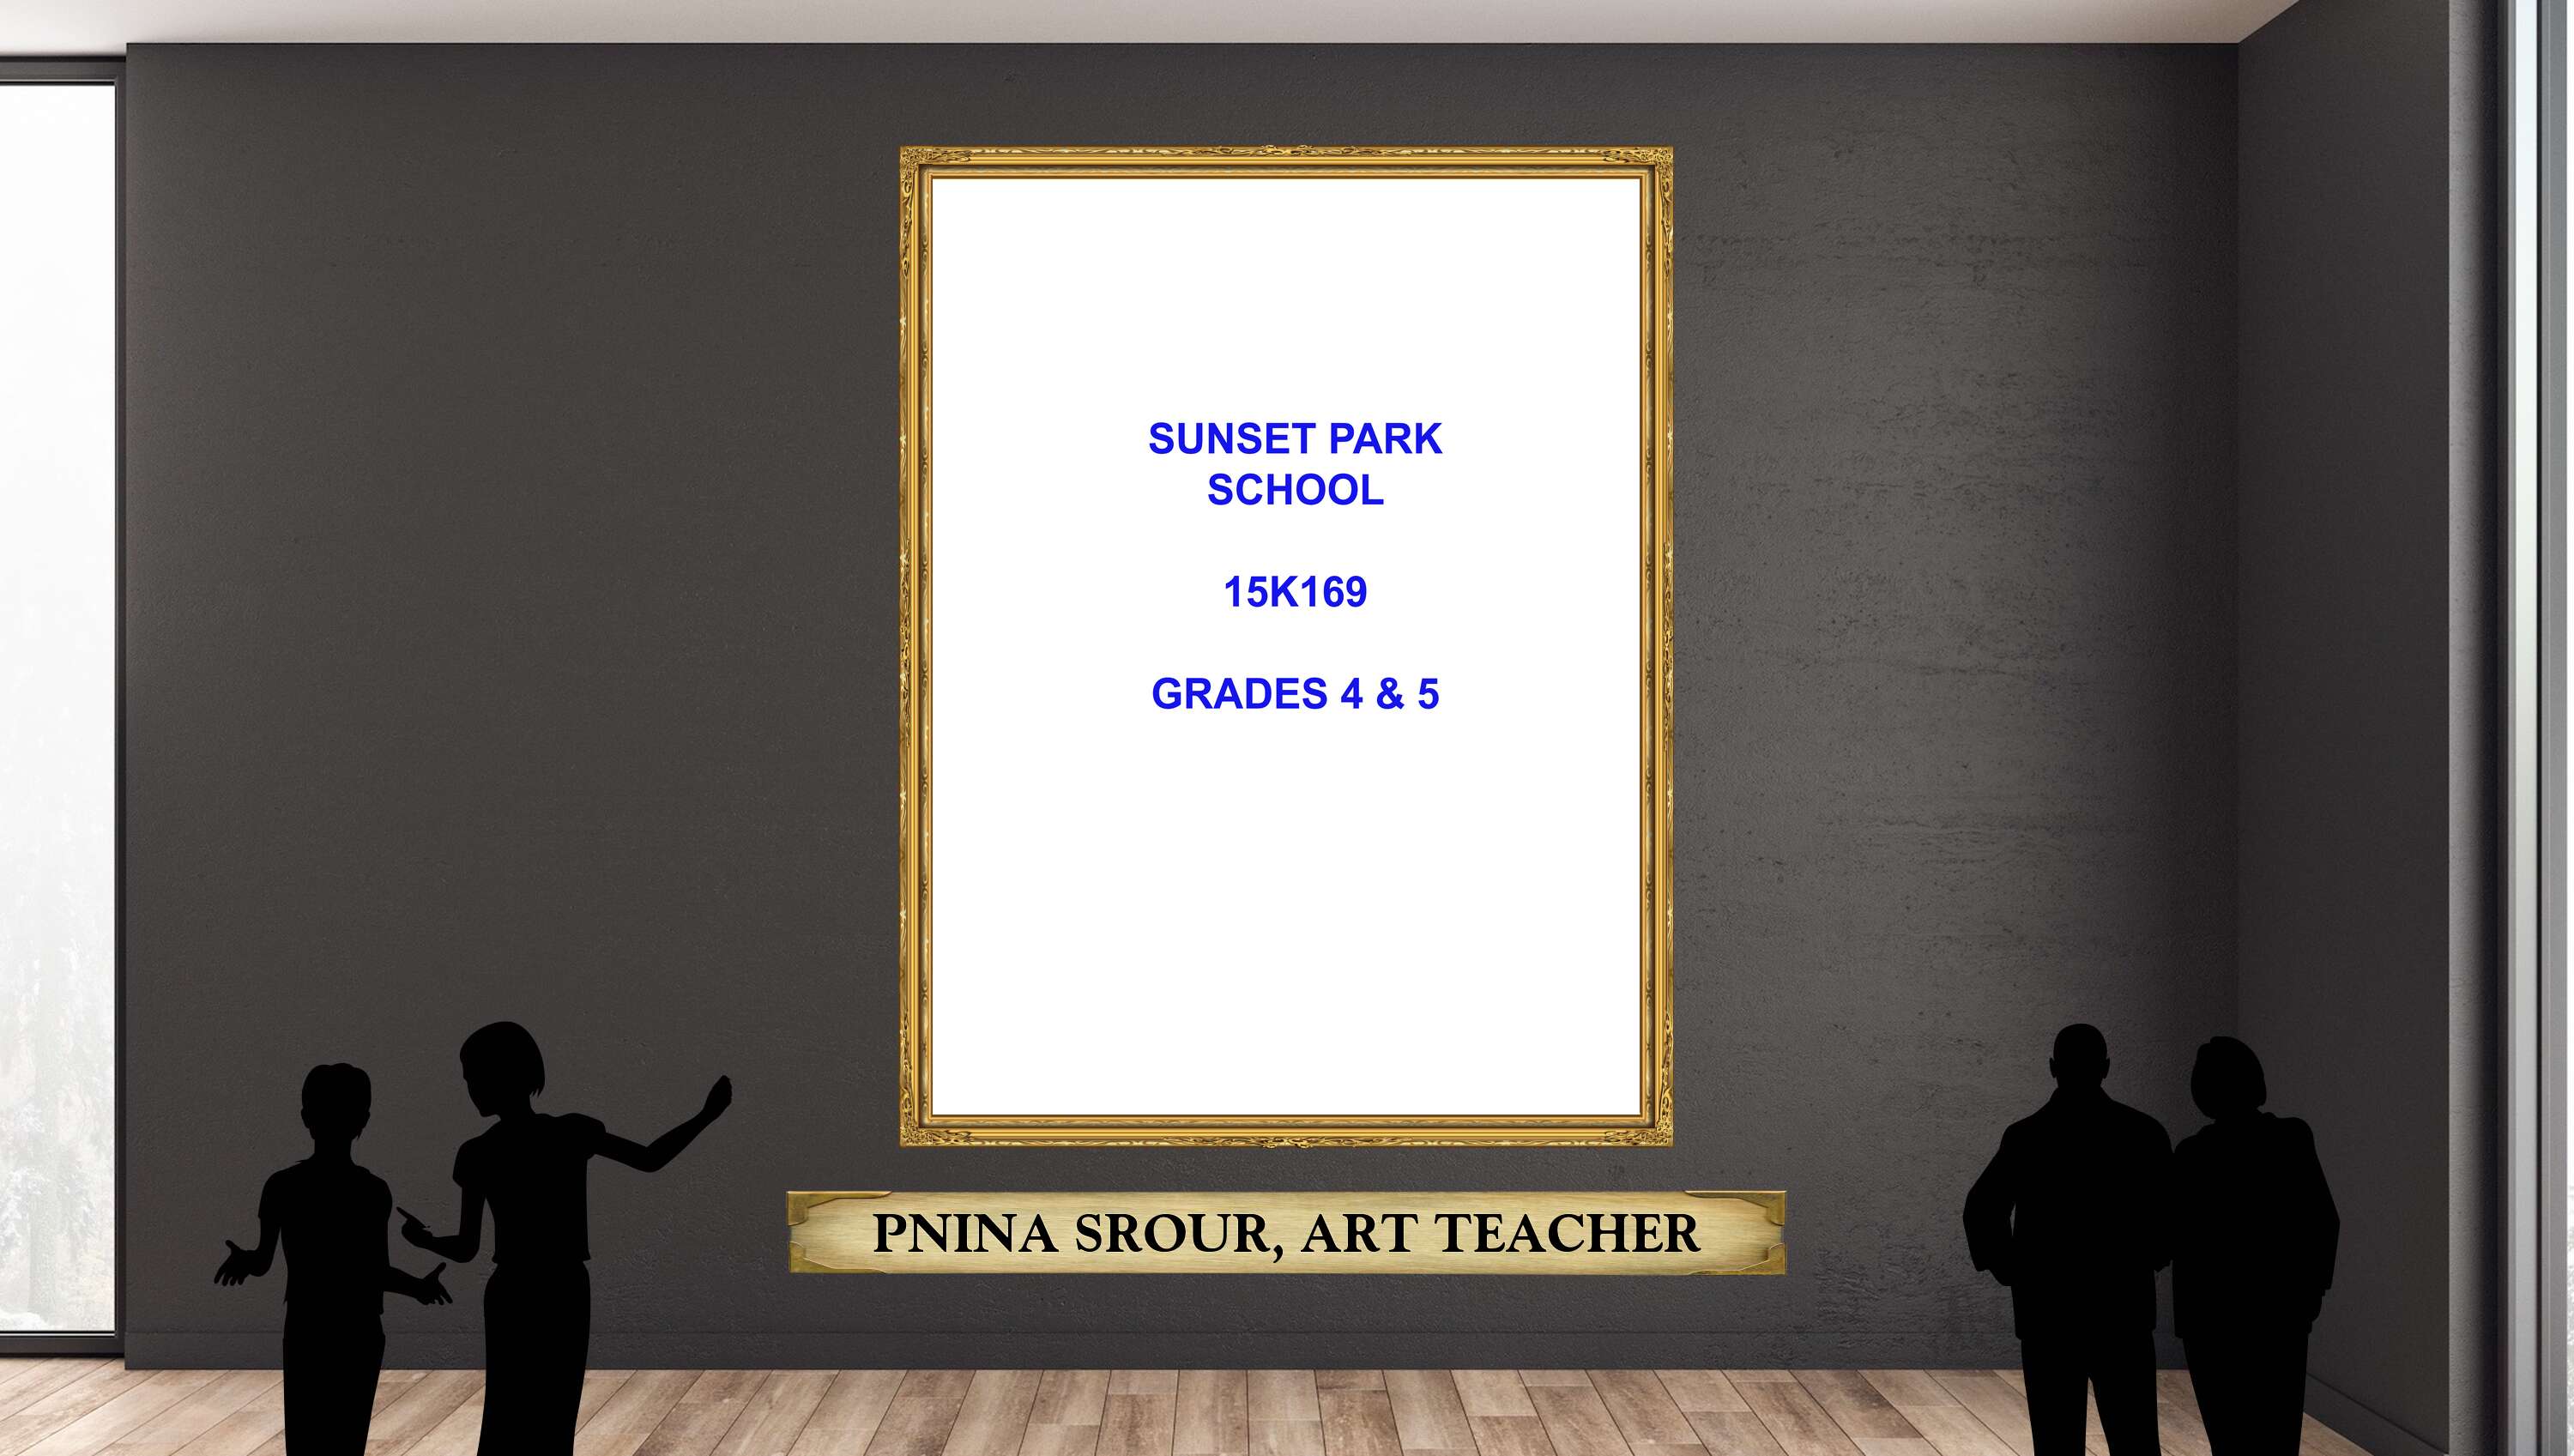 Pnina Srour, Art Teacher